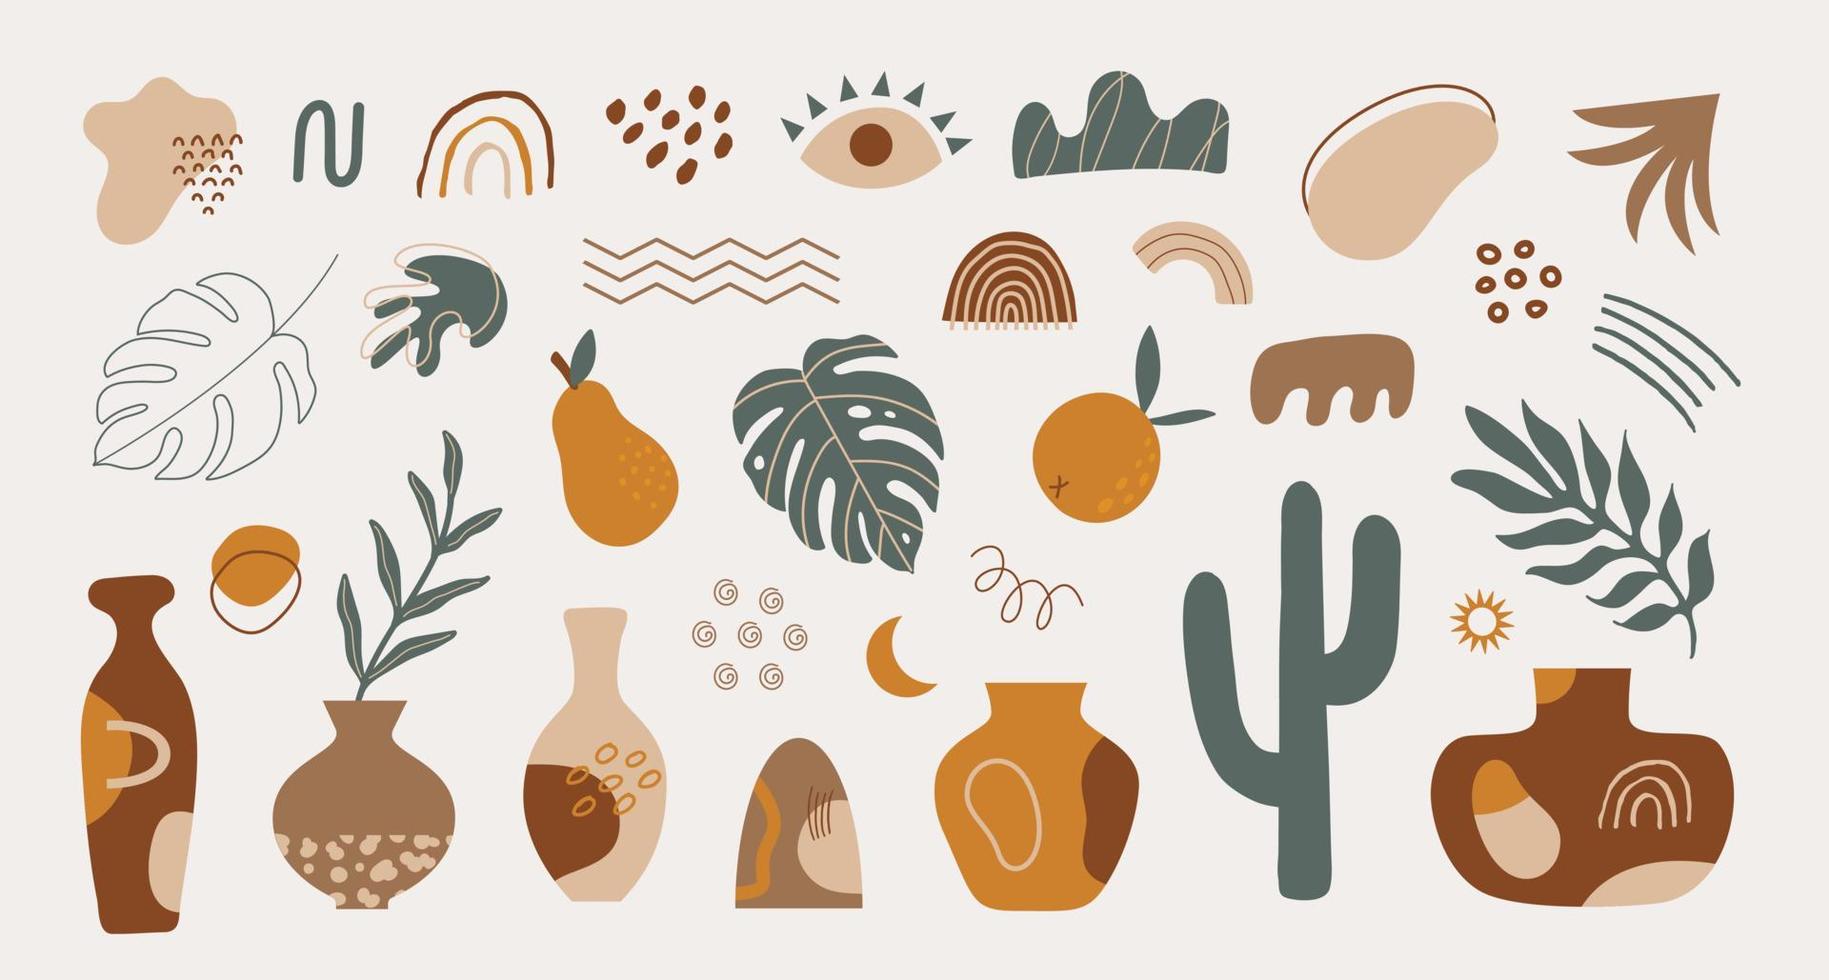 conjunto moderno de várias formas desenhadas à mão, elementos tropicais e objetos de doodle. design de vetor moderno contemporâneo abstrato em estilo boho